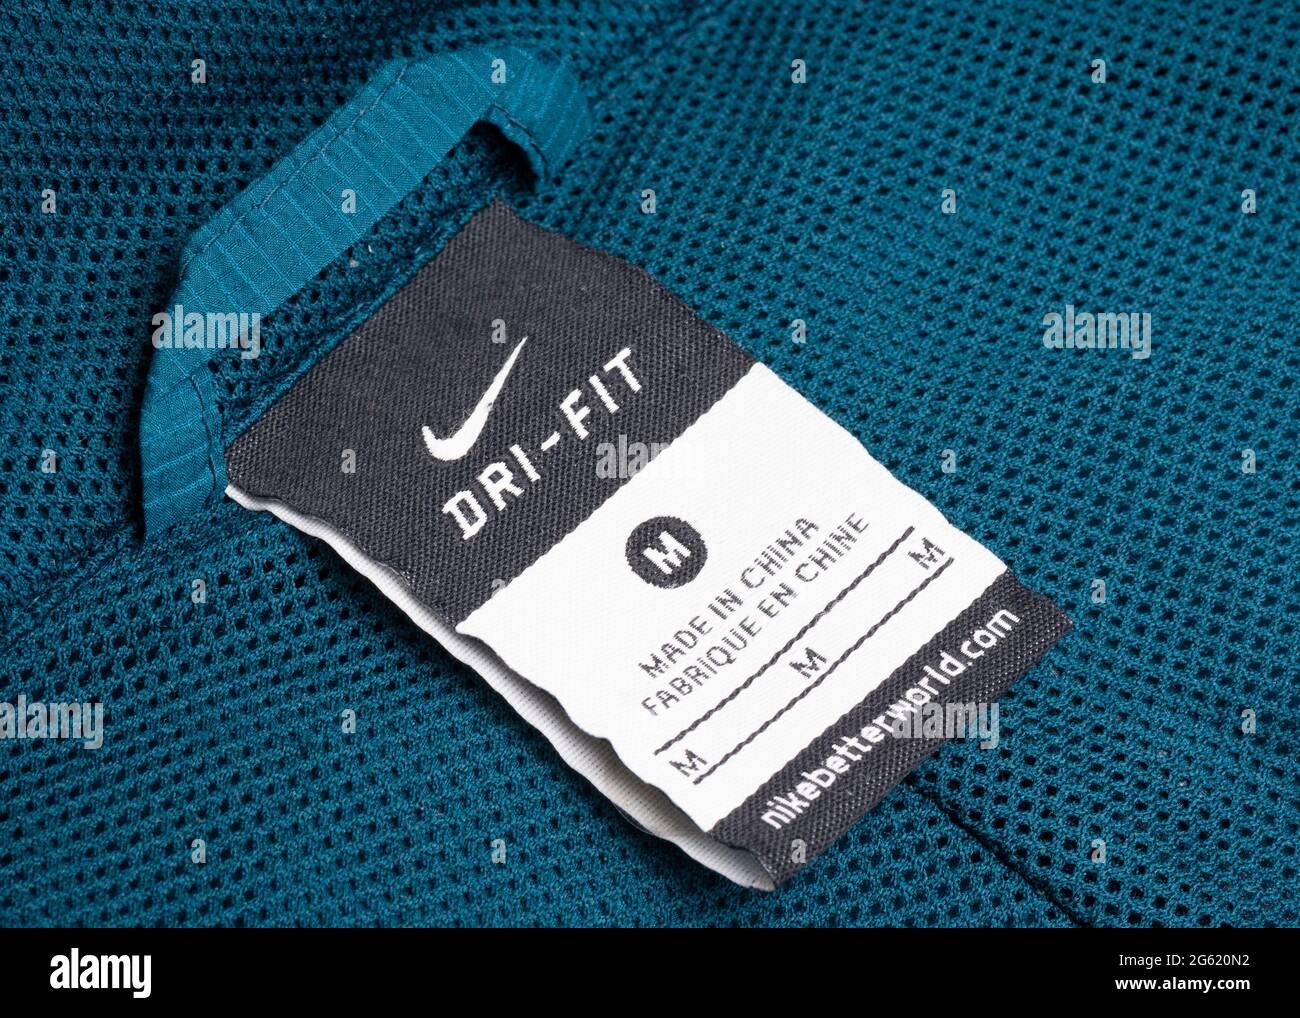 Fabriqué en Chine sur le vêtement de sport Nike Dry Fit Photo Stock - Alamy